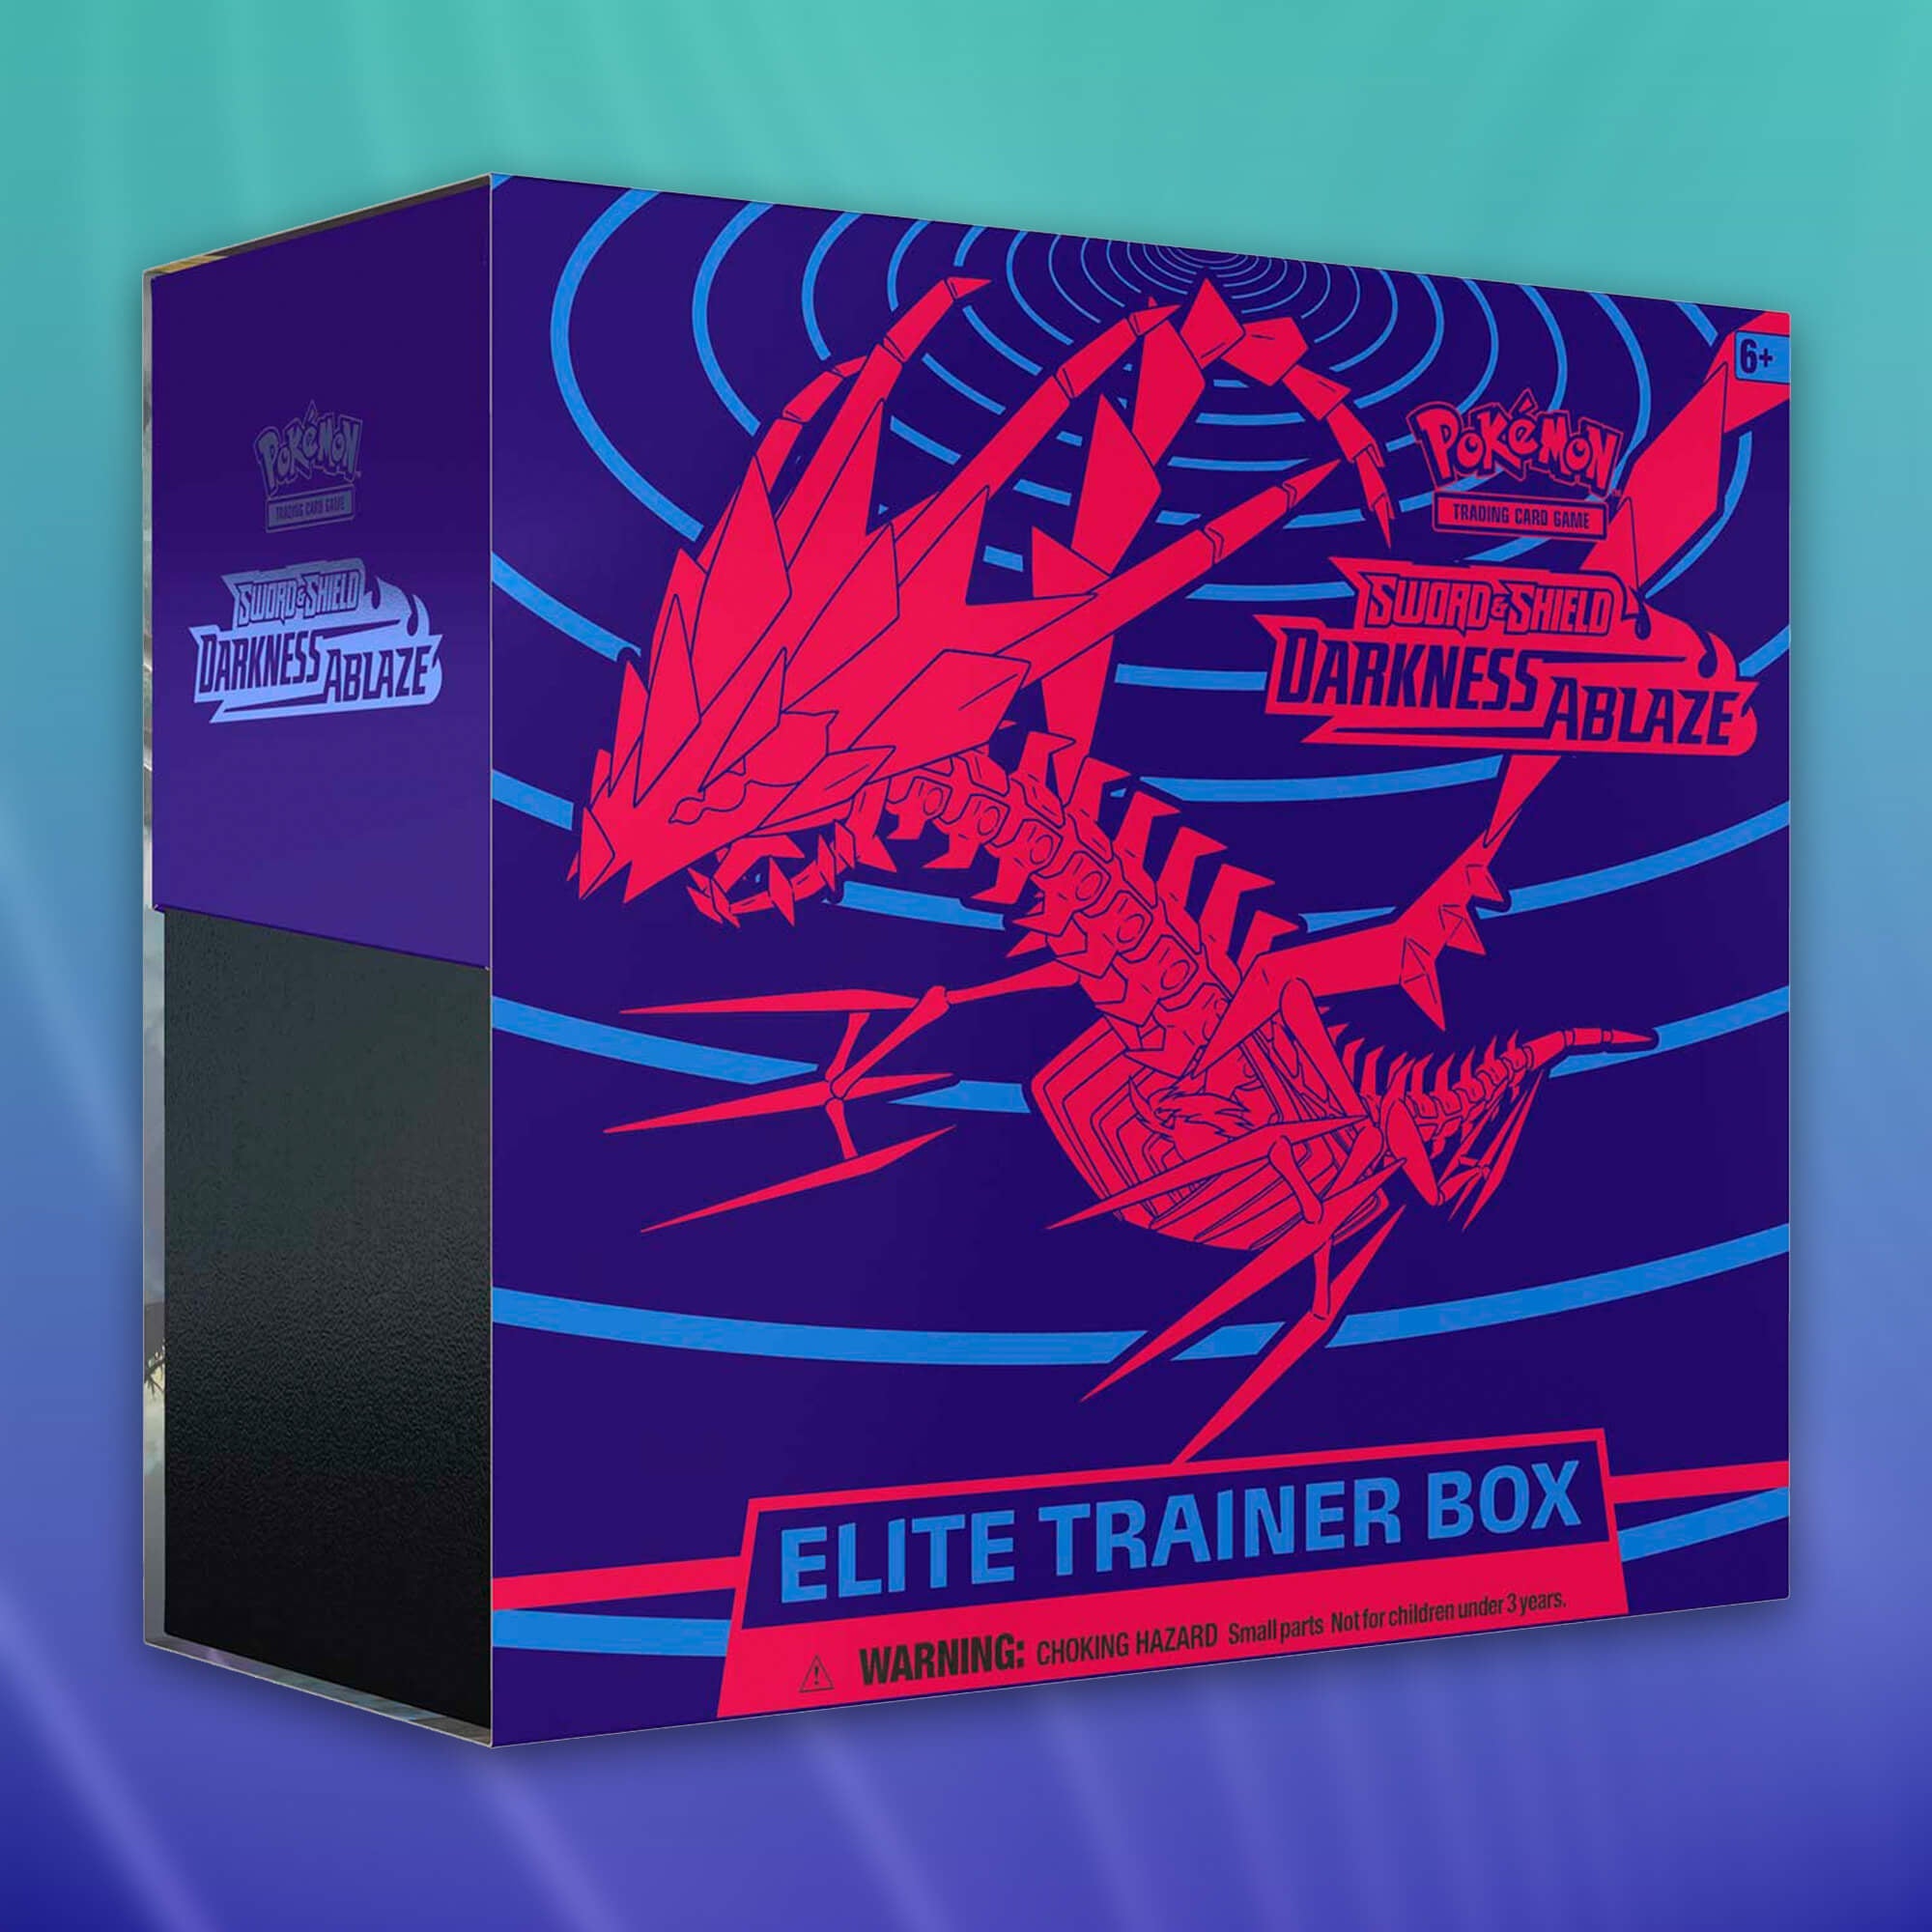 Elite-Trainer-Box 03 - Darkness Ablaze (EN)